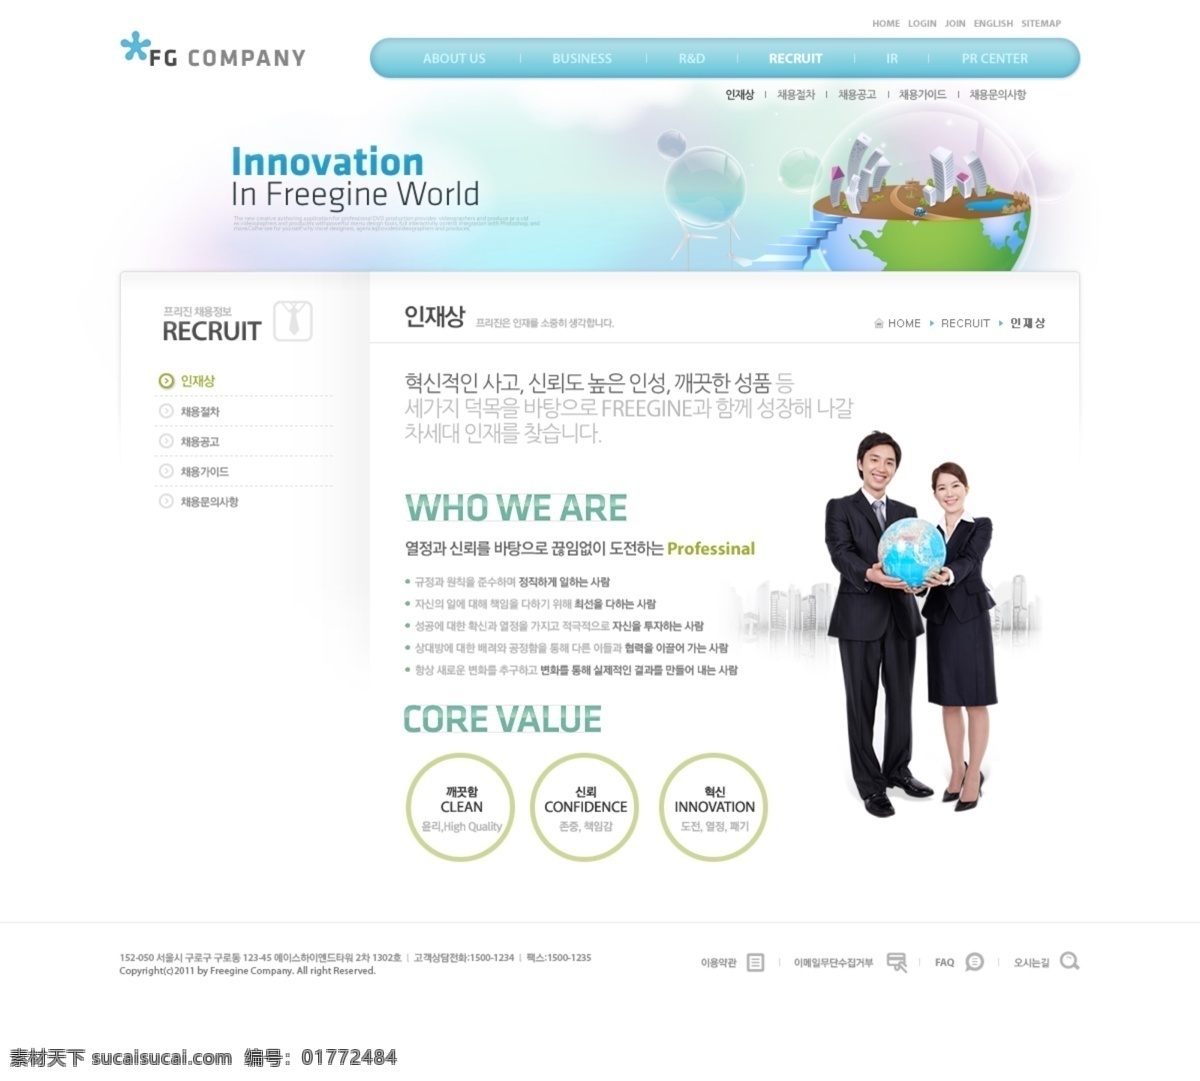 卡通 插画 风格 网页 分层 版式设计 韩国模板 界面设计 人物 商务 源文件 网页设计 网页模板 网页界面 网页版式 网页布局 web 韩文模板 网页素材 其他网页素材